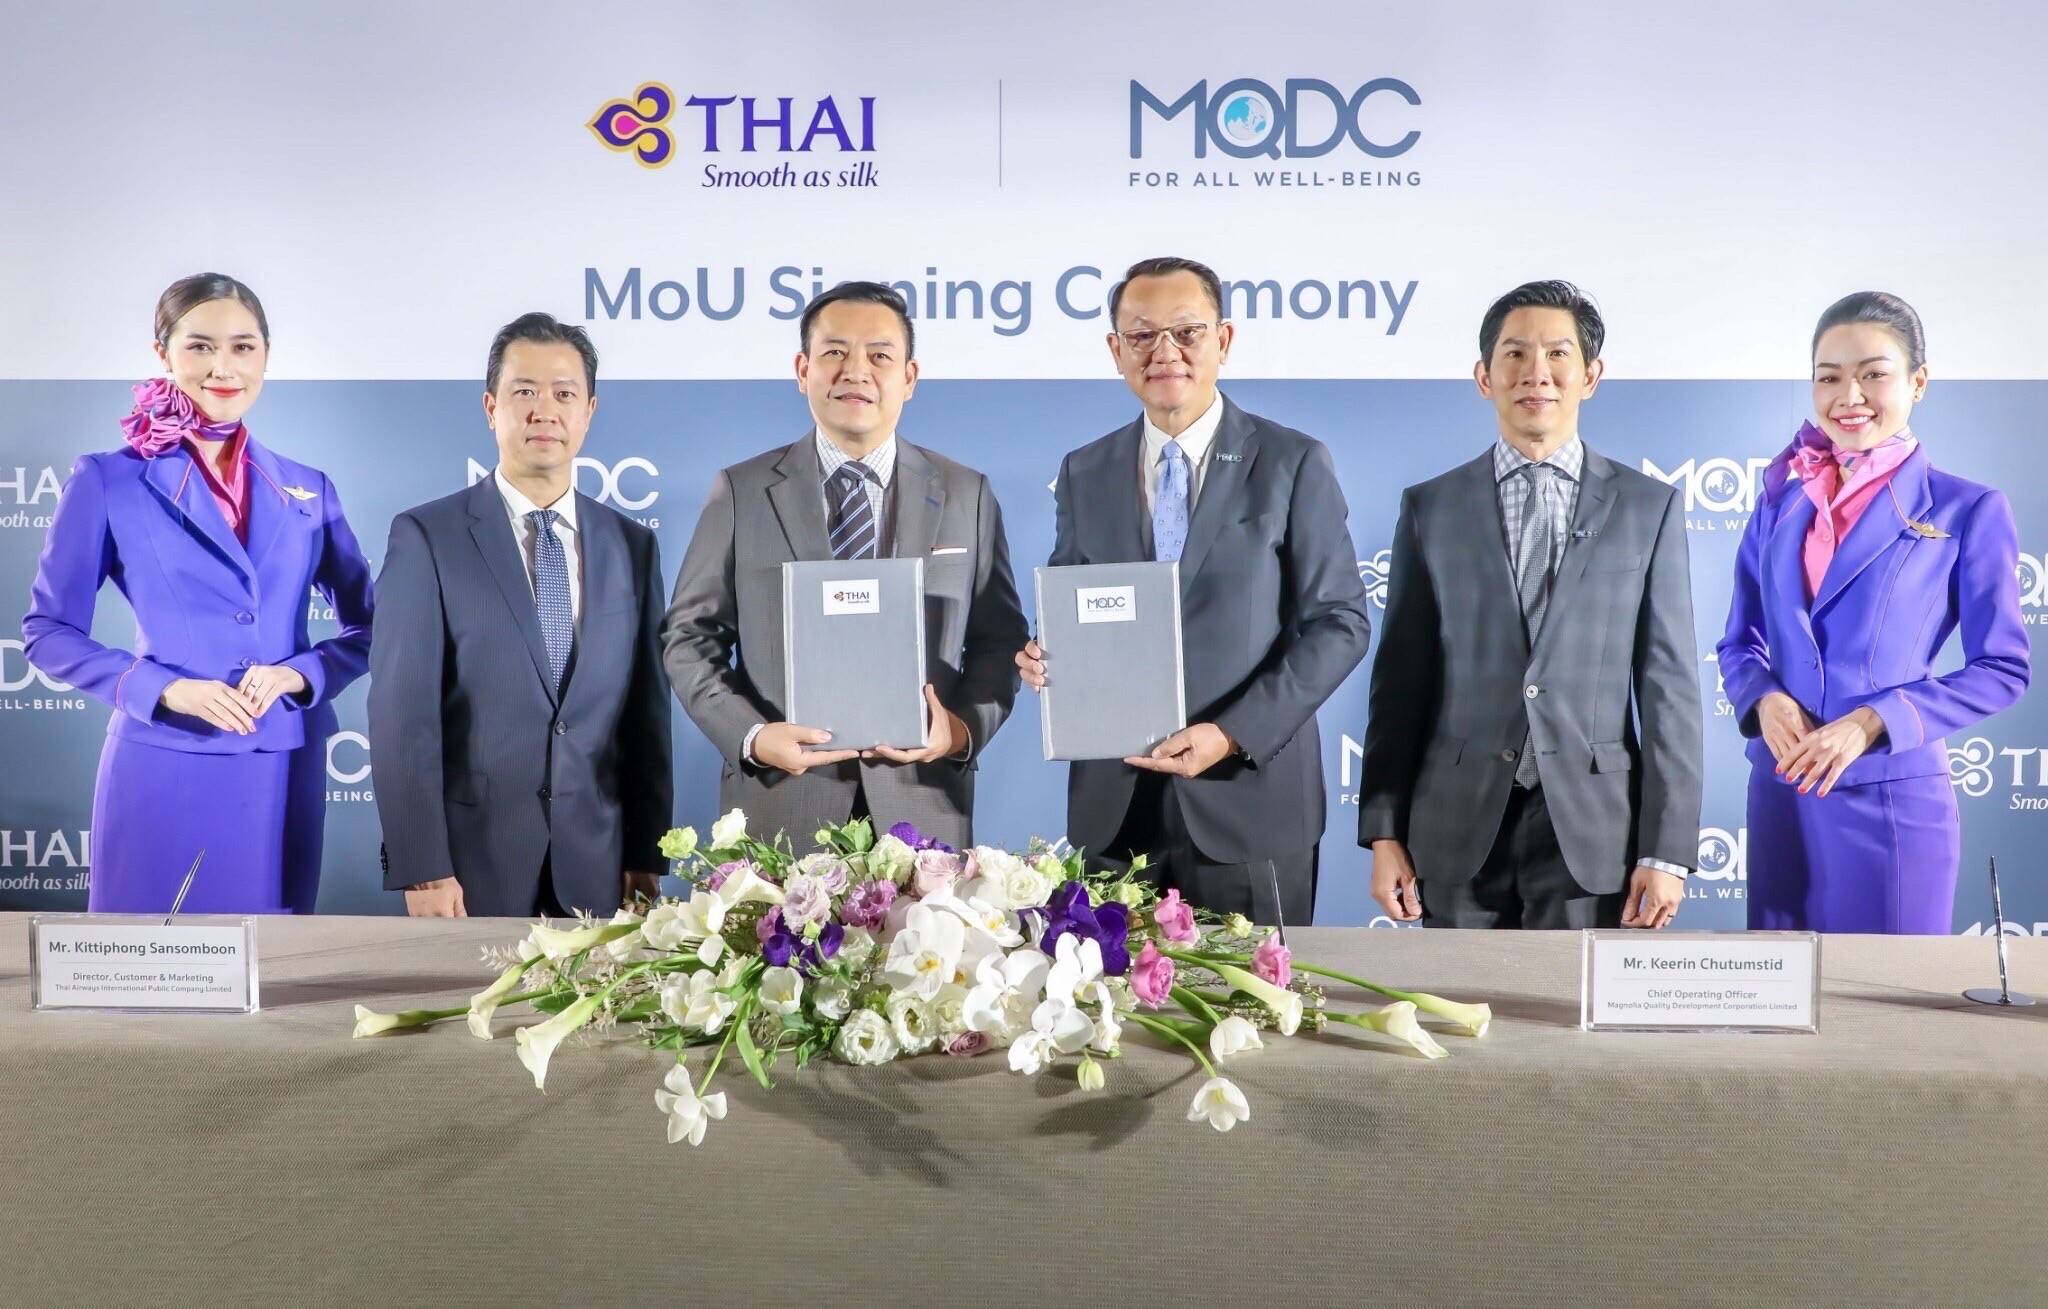 การบินไทย และ MQDC ประกาศความร่วมมือครั้งสำคัญ ร่วมผลักดันธุรกิจอสังหาฯและการท่องเที่ยวไทย